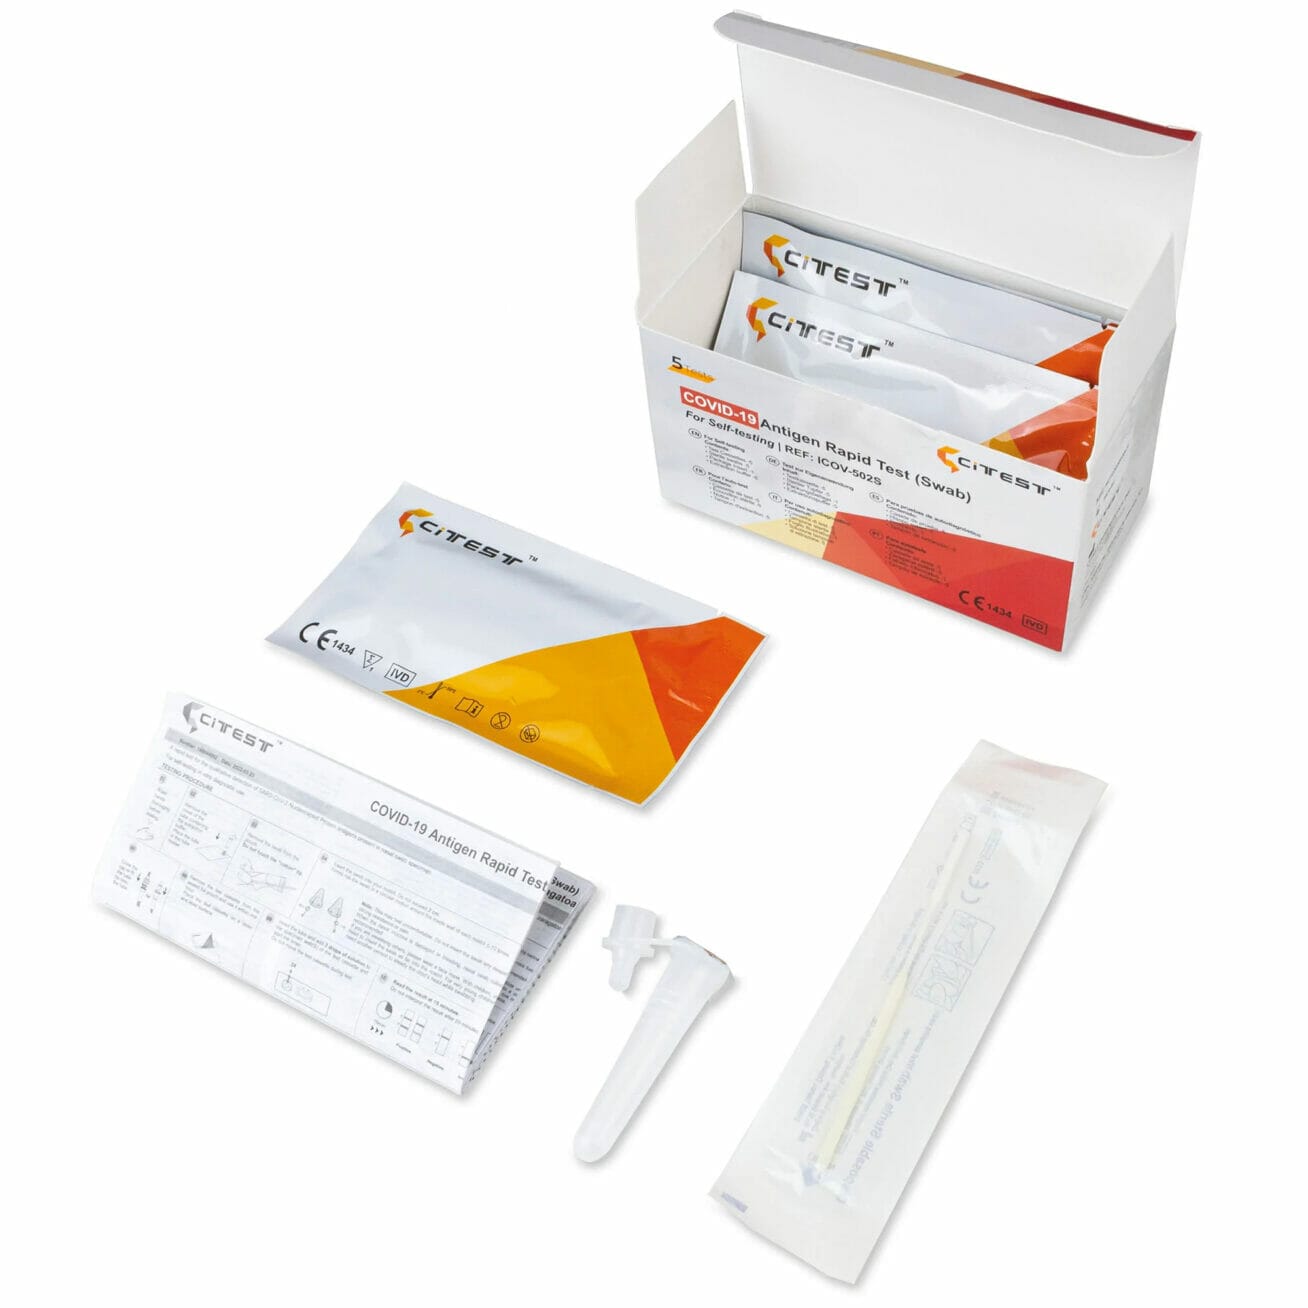 CITEST Diagnostics COVID-19 Antigen Rapid Test (Swab) Laientest AT1350/21 -  Hygiene100